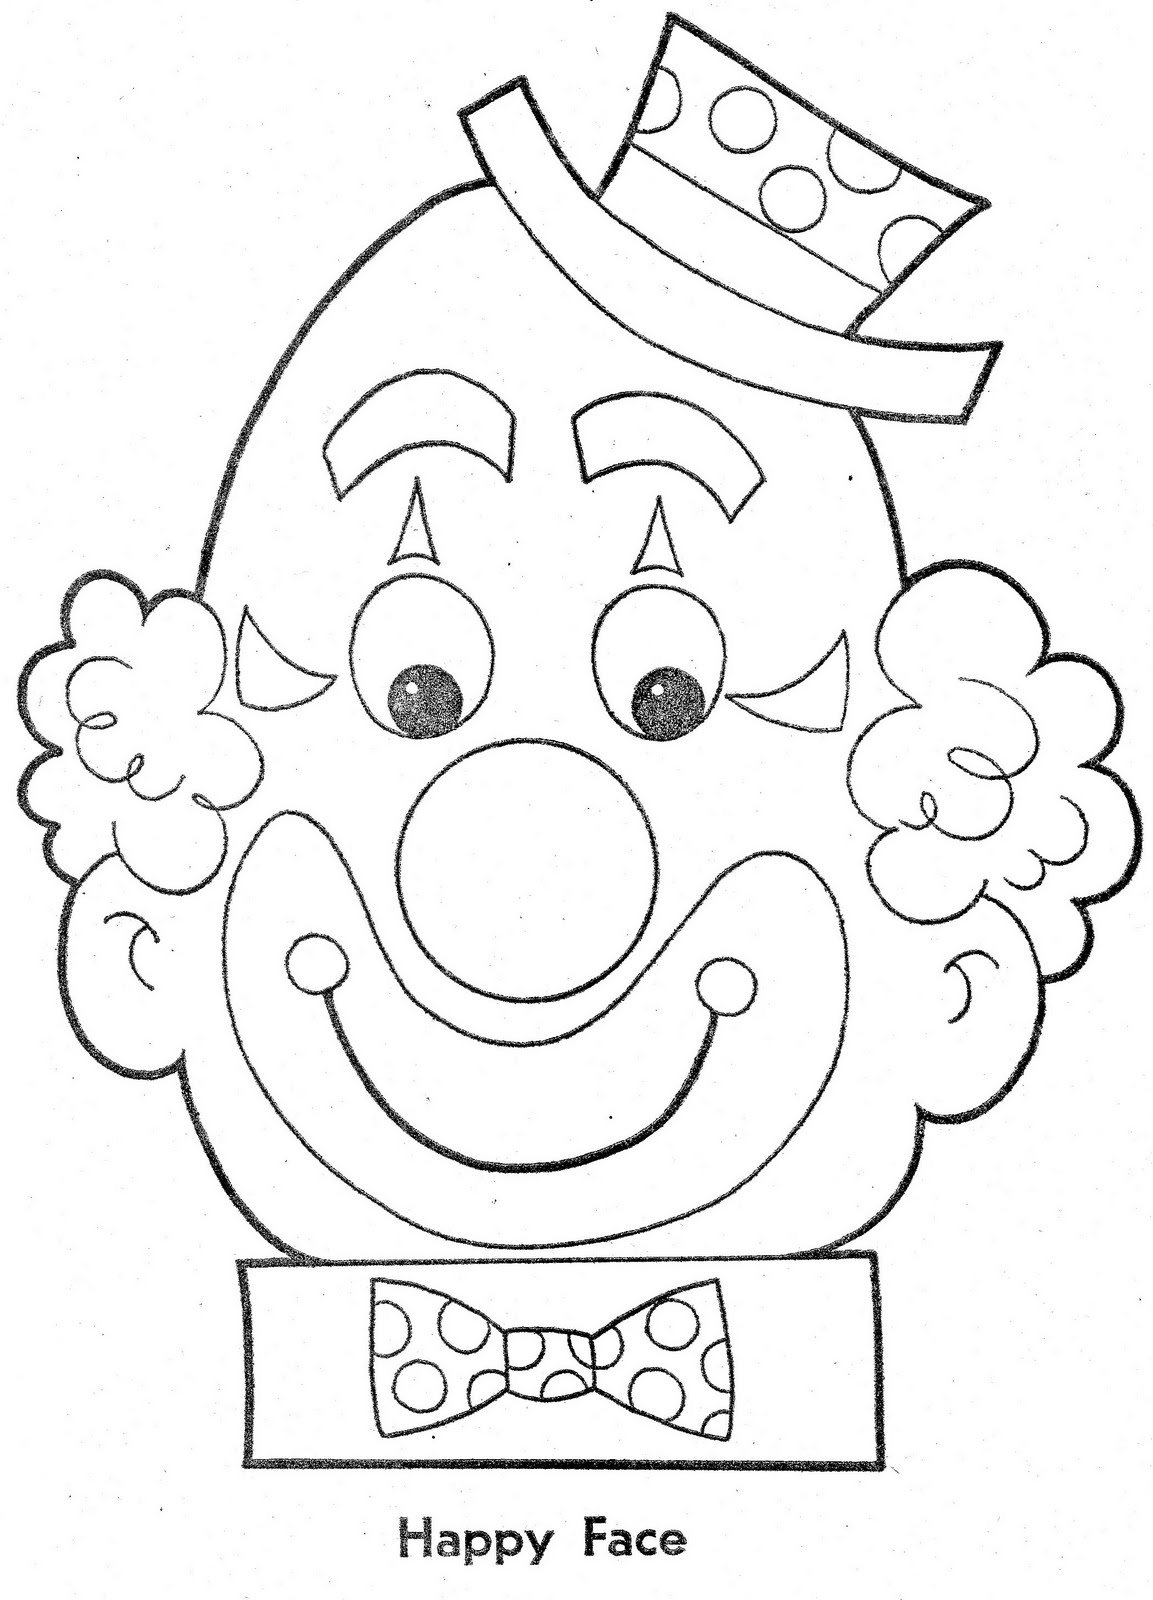 Шаблон клоуна для аппликации для детей. Голова клоуна для аппликации. Трафарет лица клоуна для аппликации. Клоун раскраска.